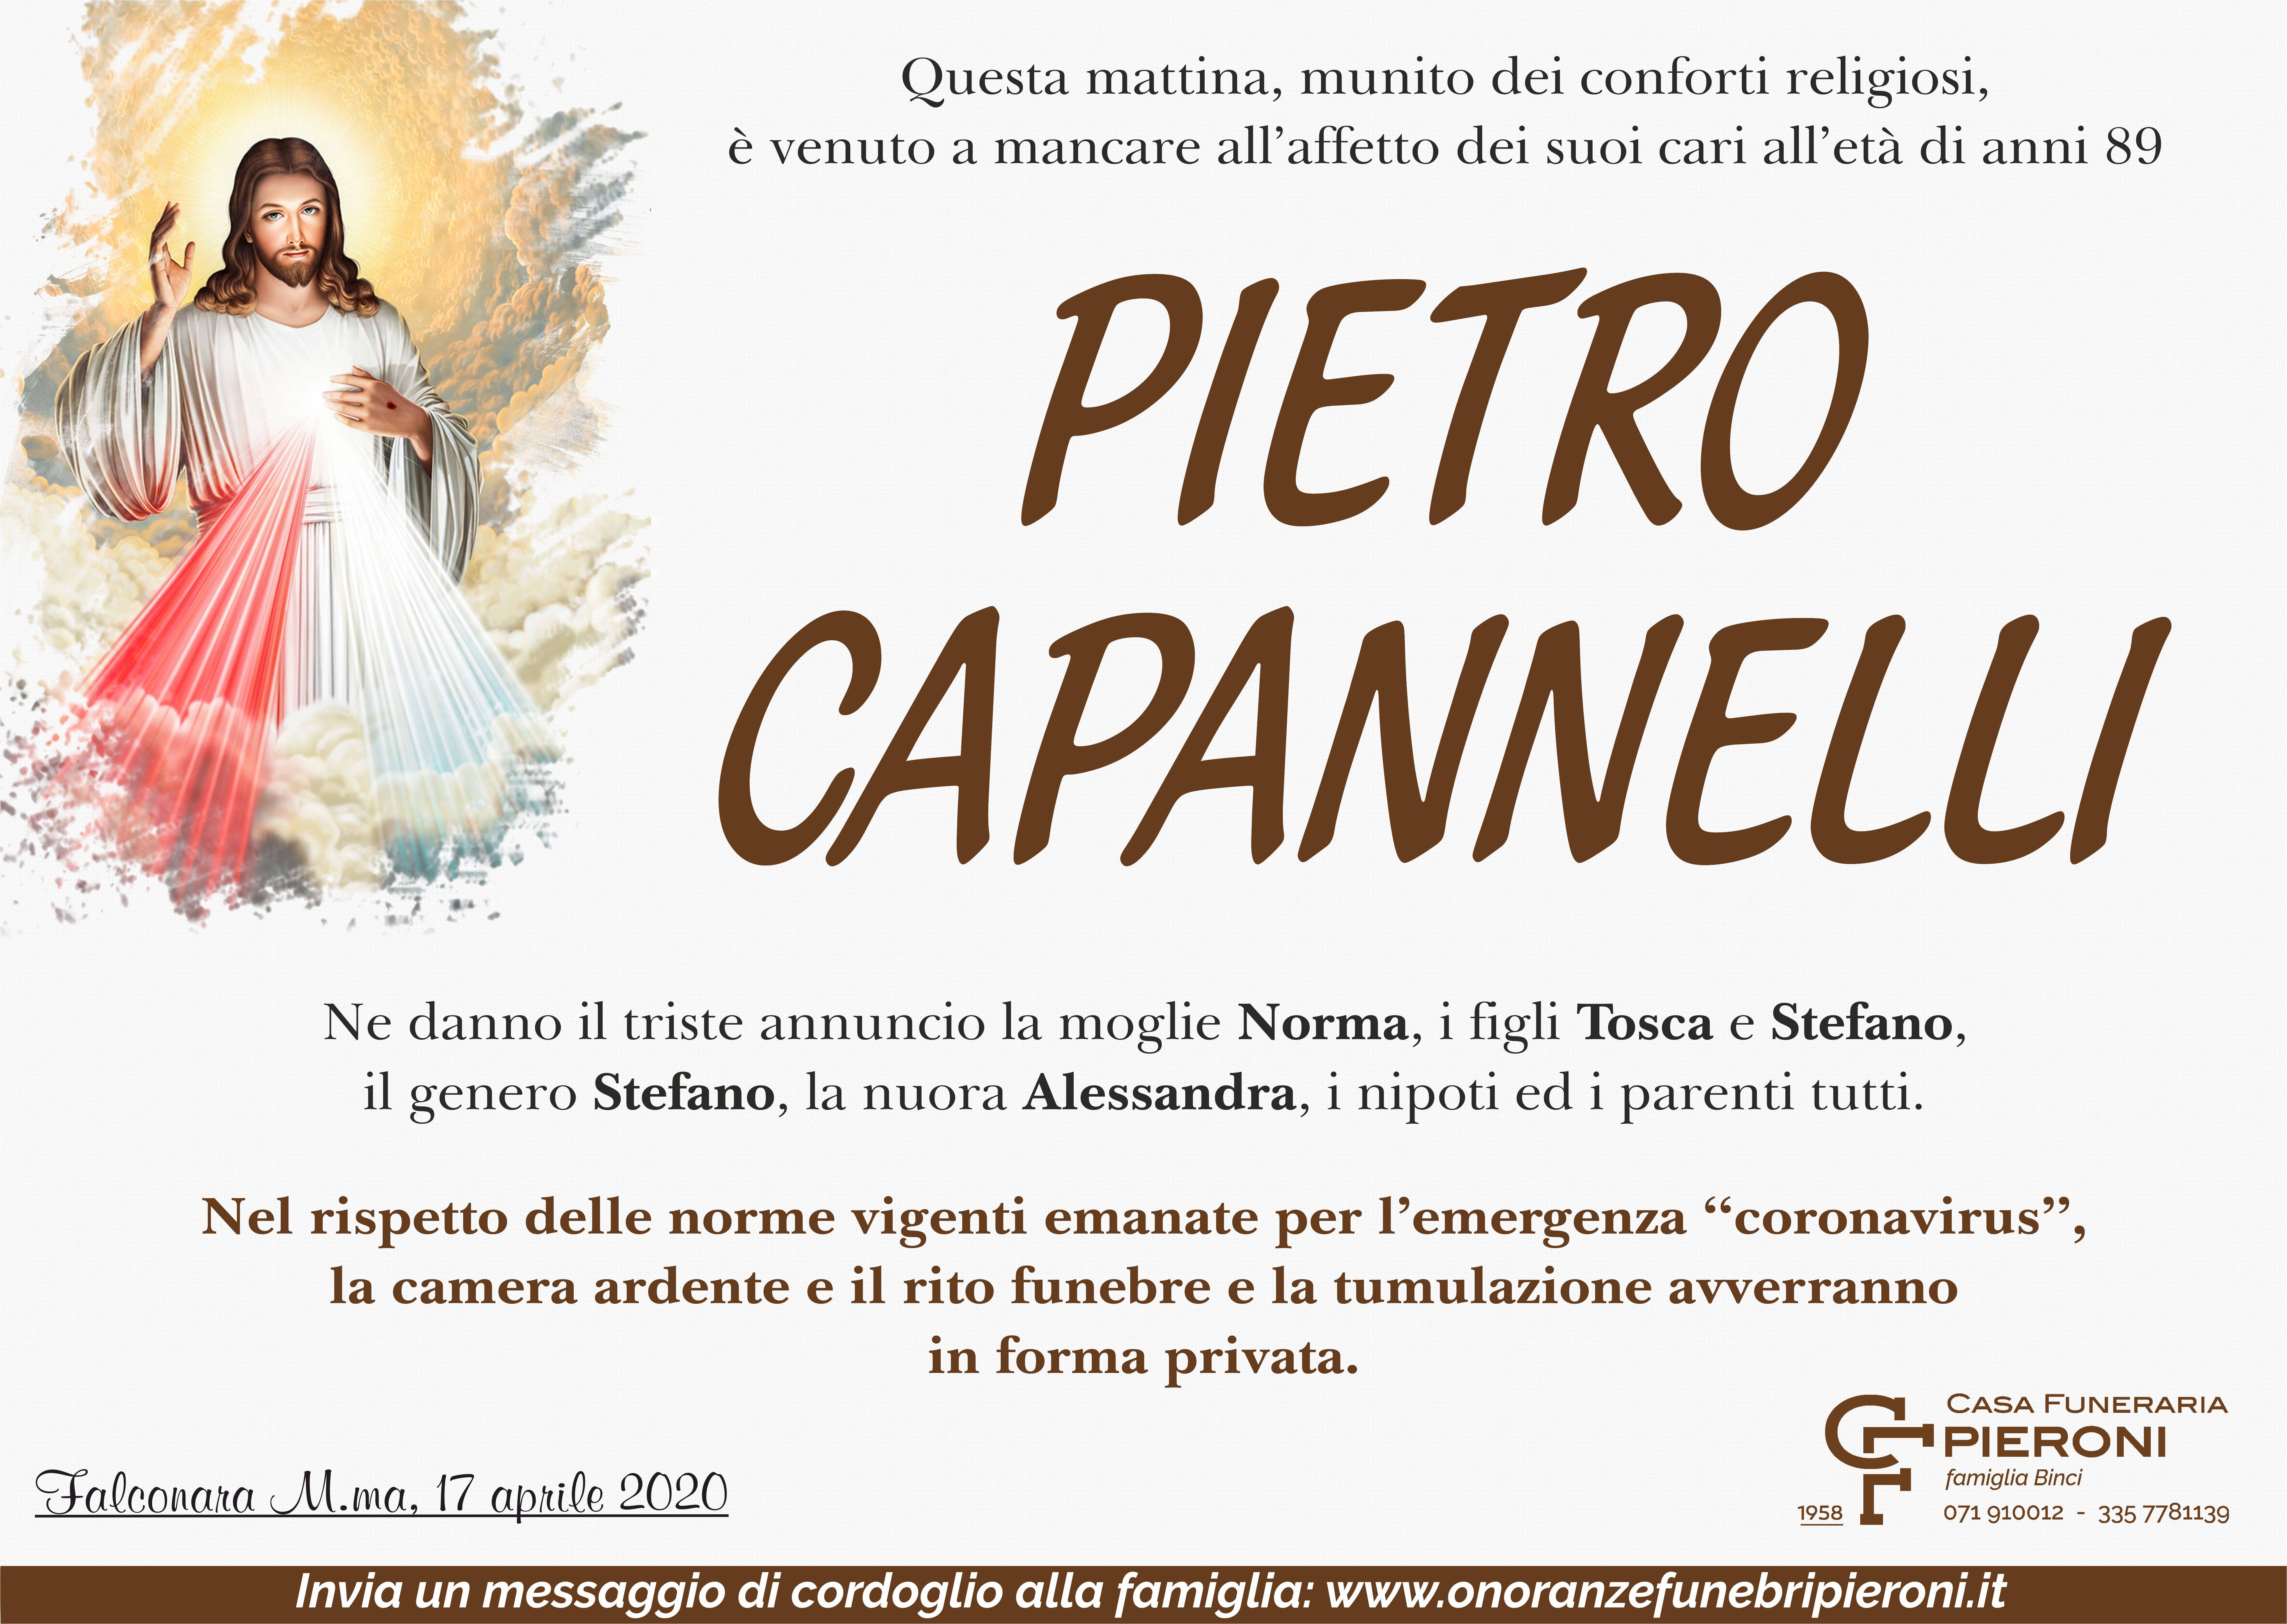 Pietro Capannelli